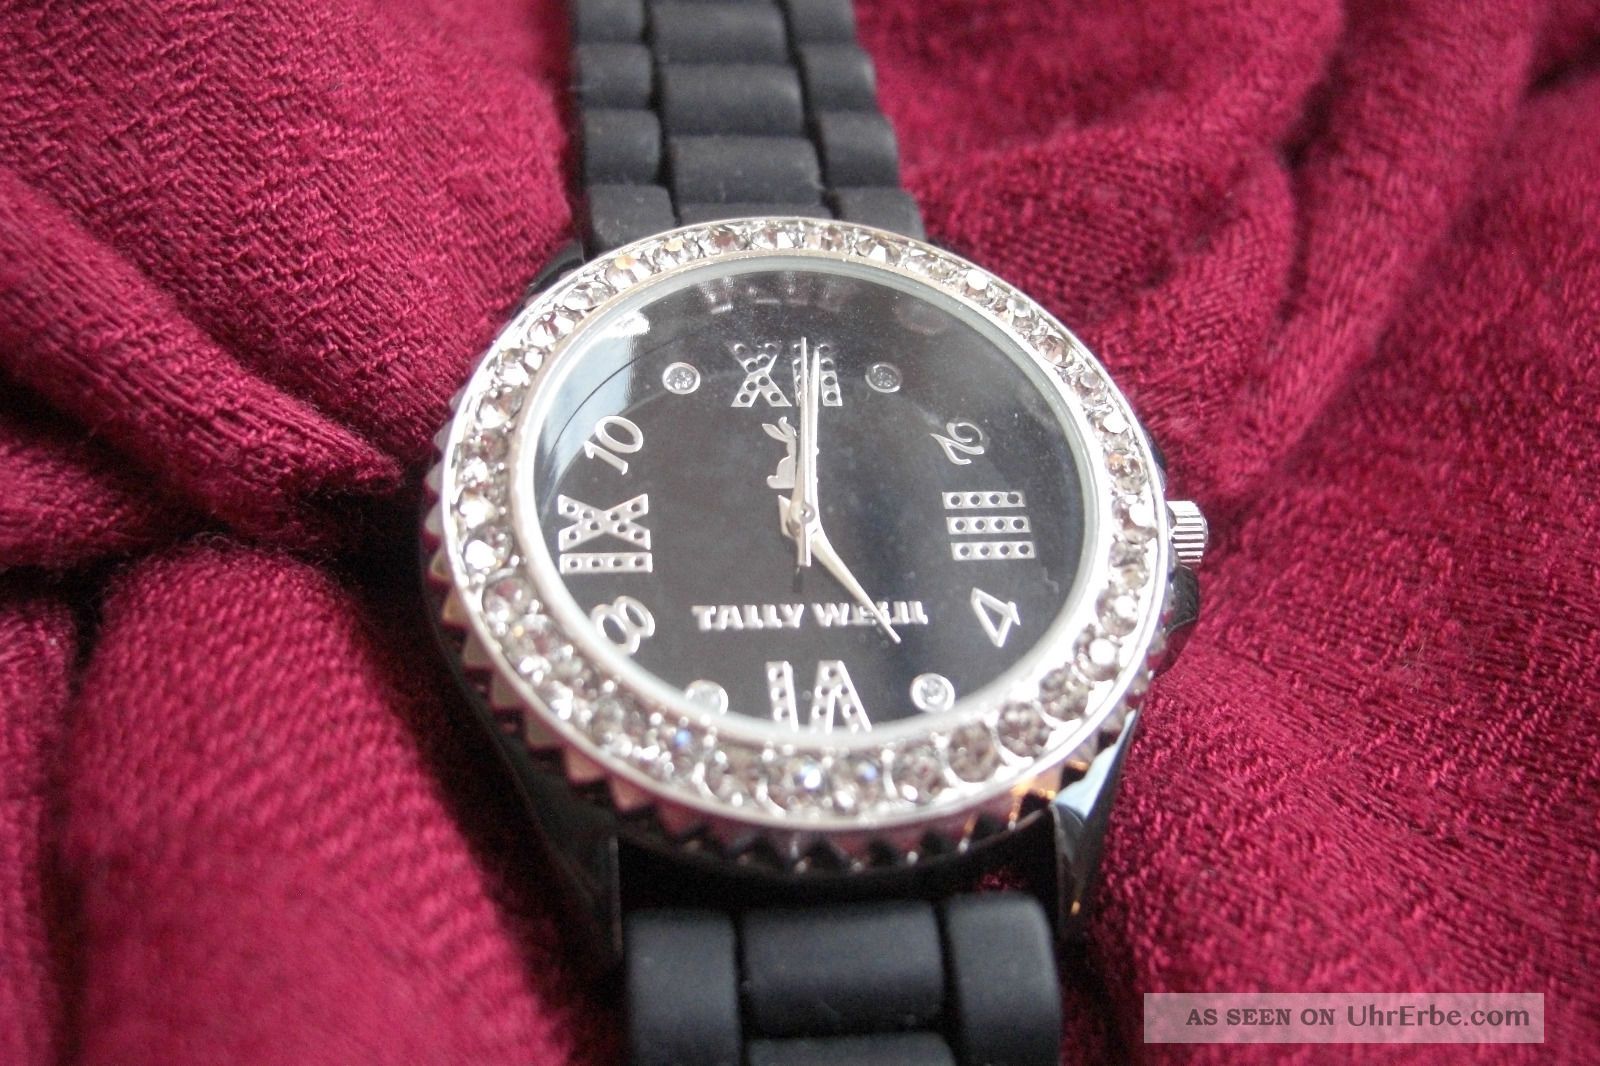 Armbanduhr Damen Uhr Schwarz Mit Glitzersteinen Wie Armbanduhren Bild